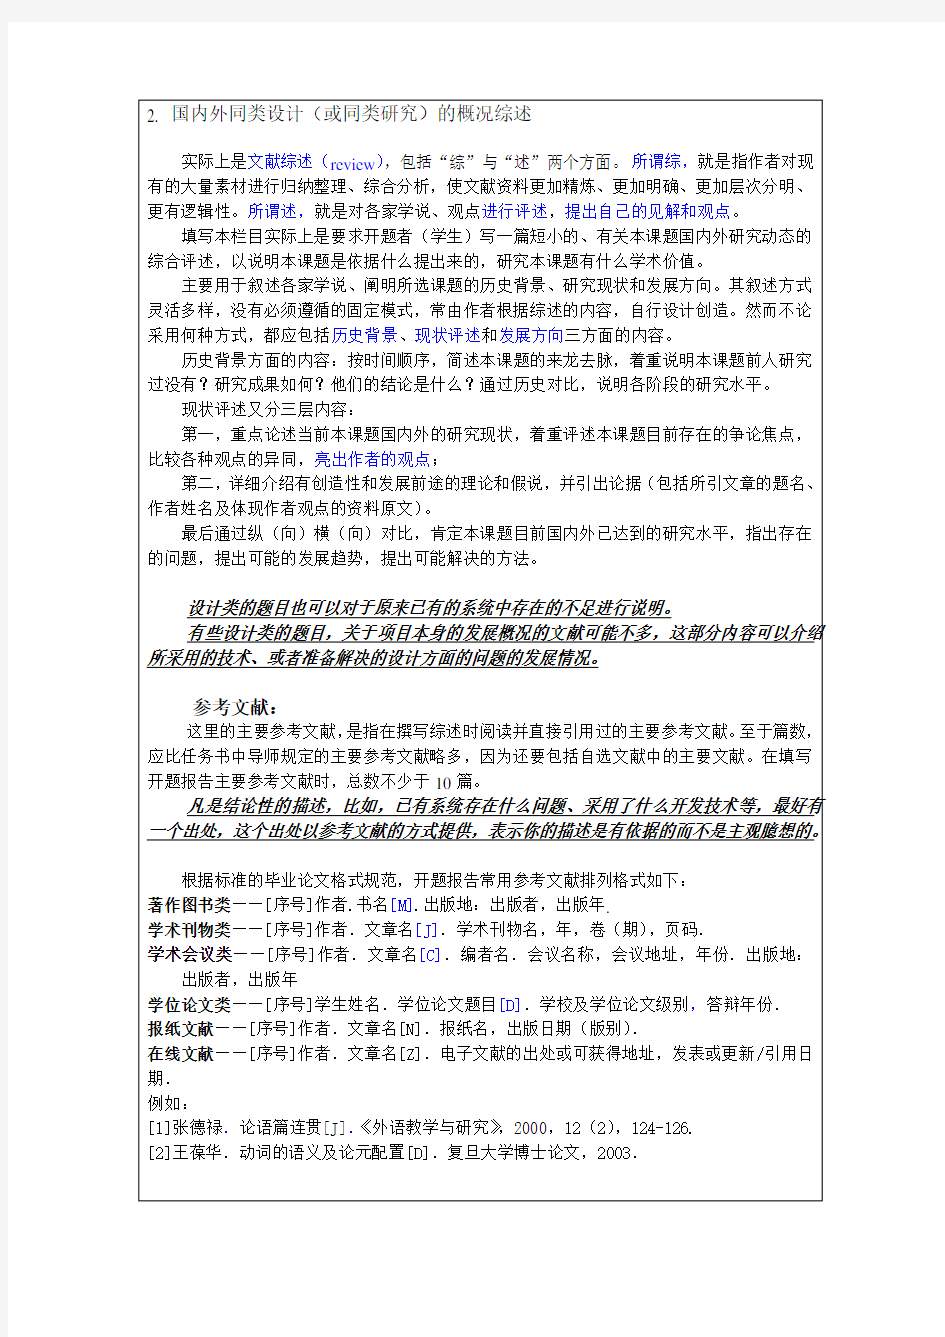 河南科技大学毕业设计开题报告模版